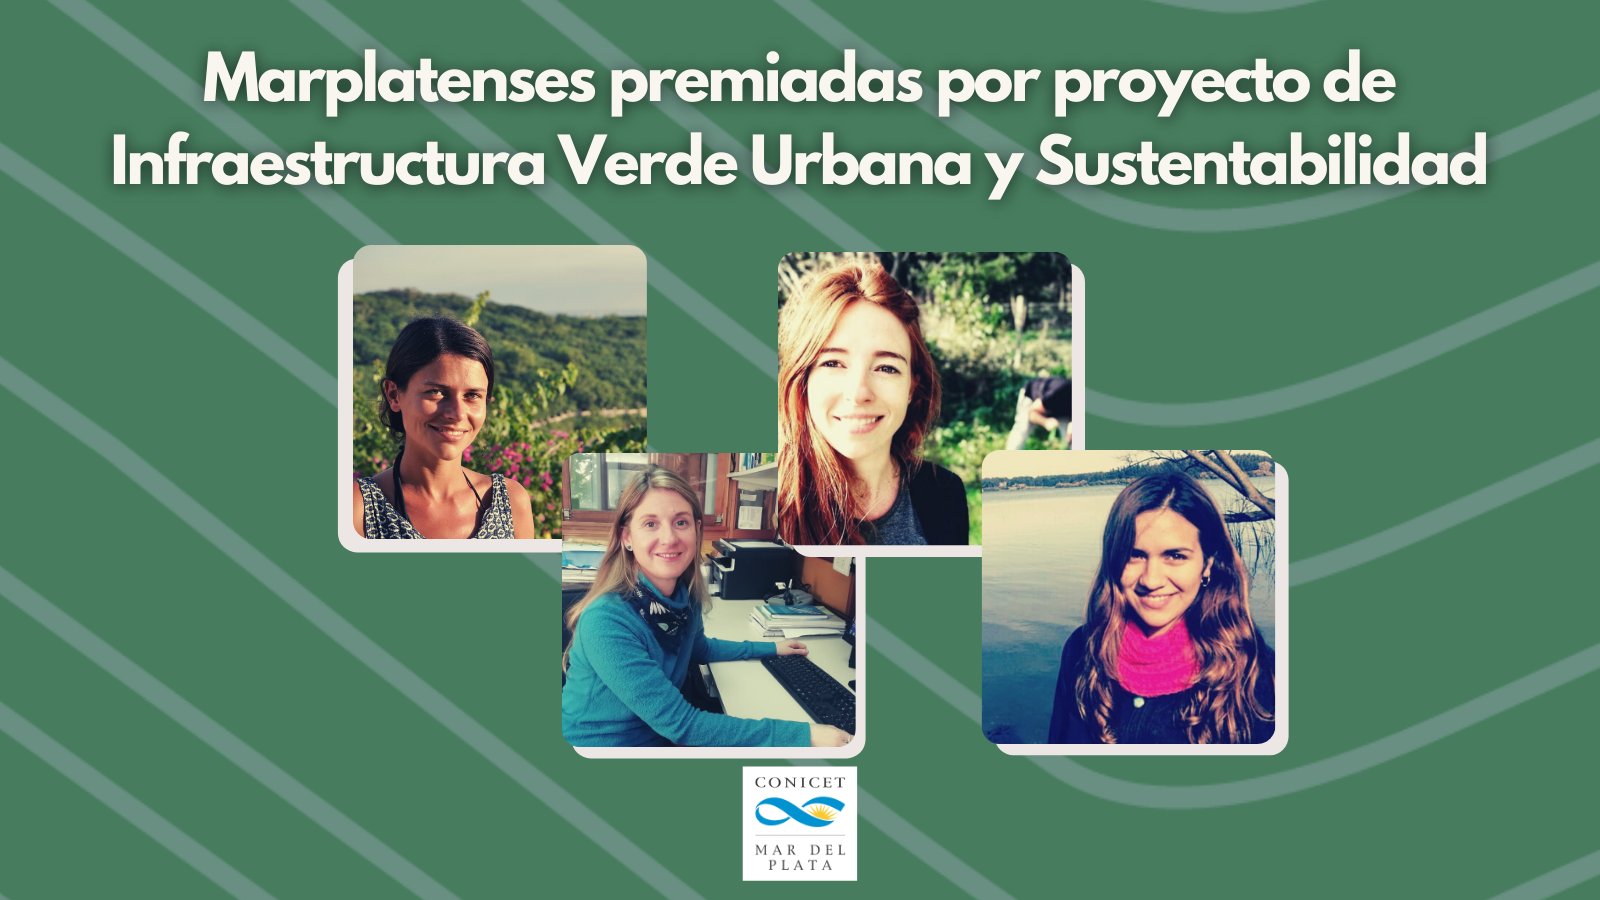 Marplatenses premiadas por proyecto de Infraestructura Verde Urbana y Sustentabilidad